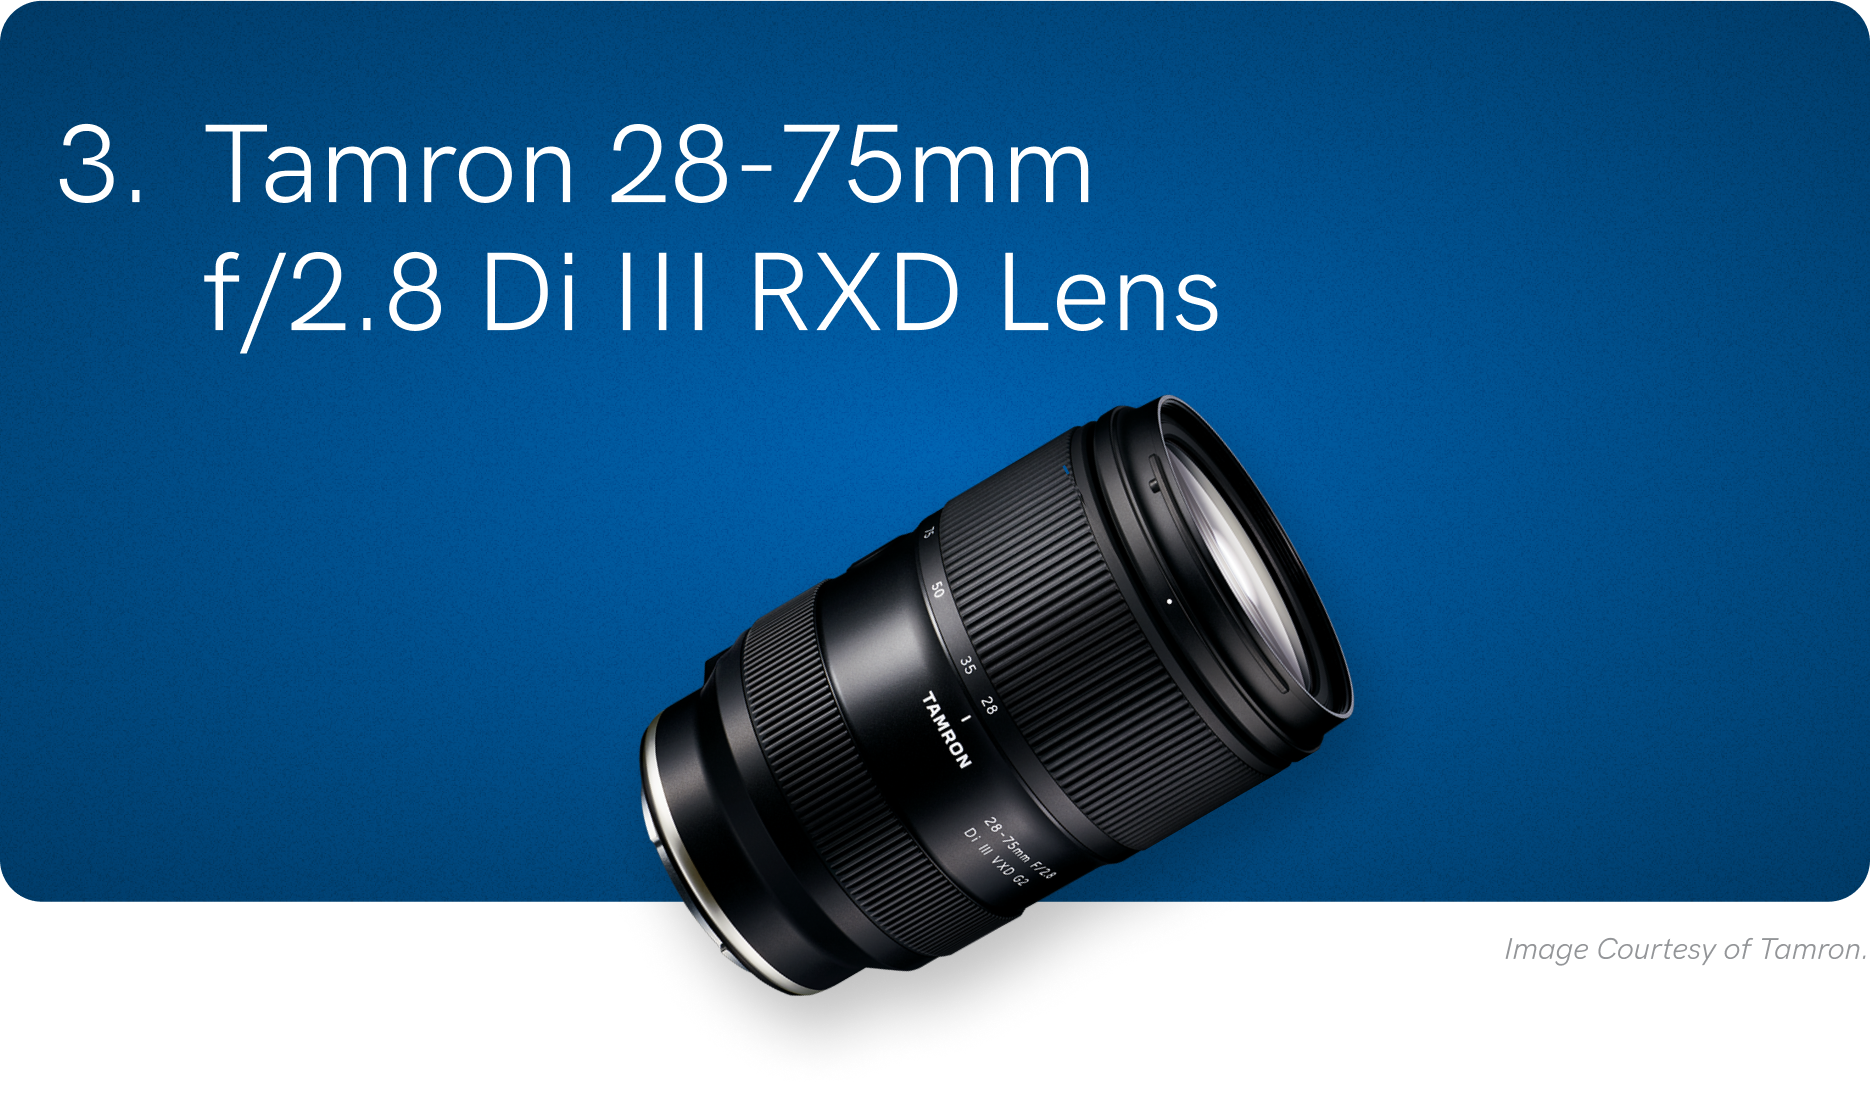 3. Tamron 28-75mm f/2.8 Di III RXD Lens